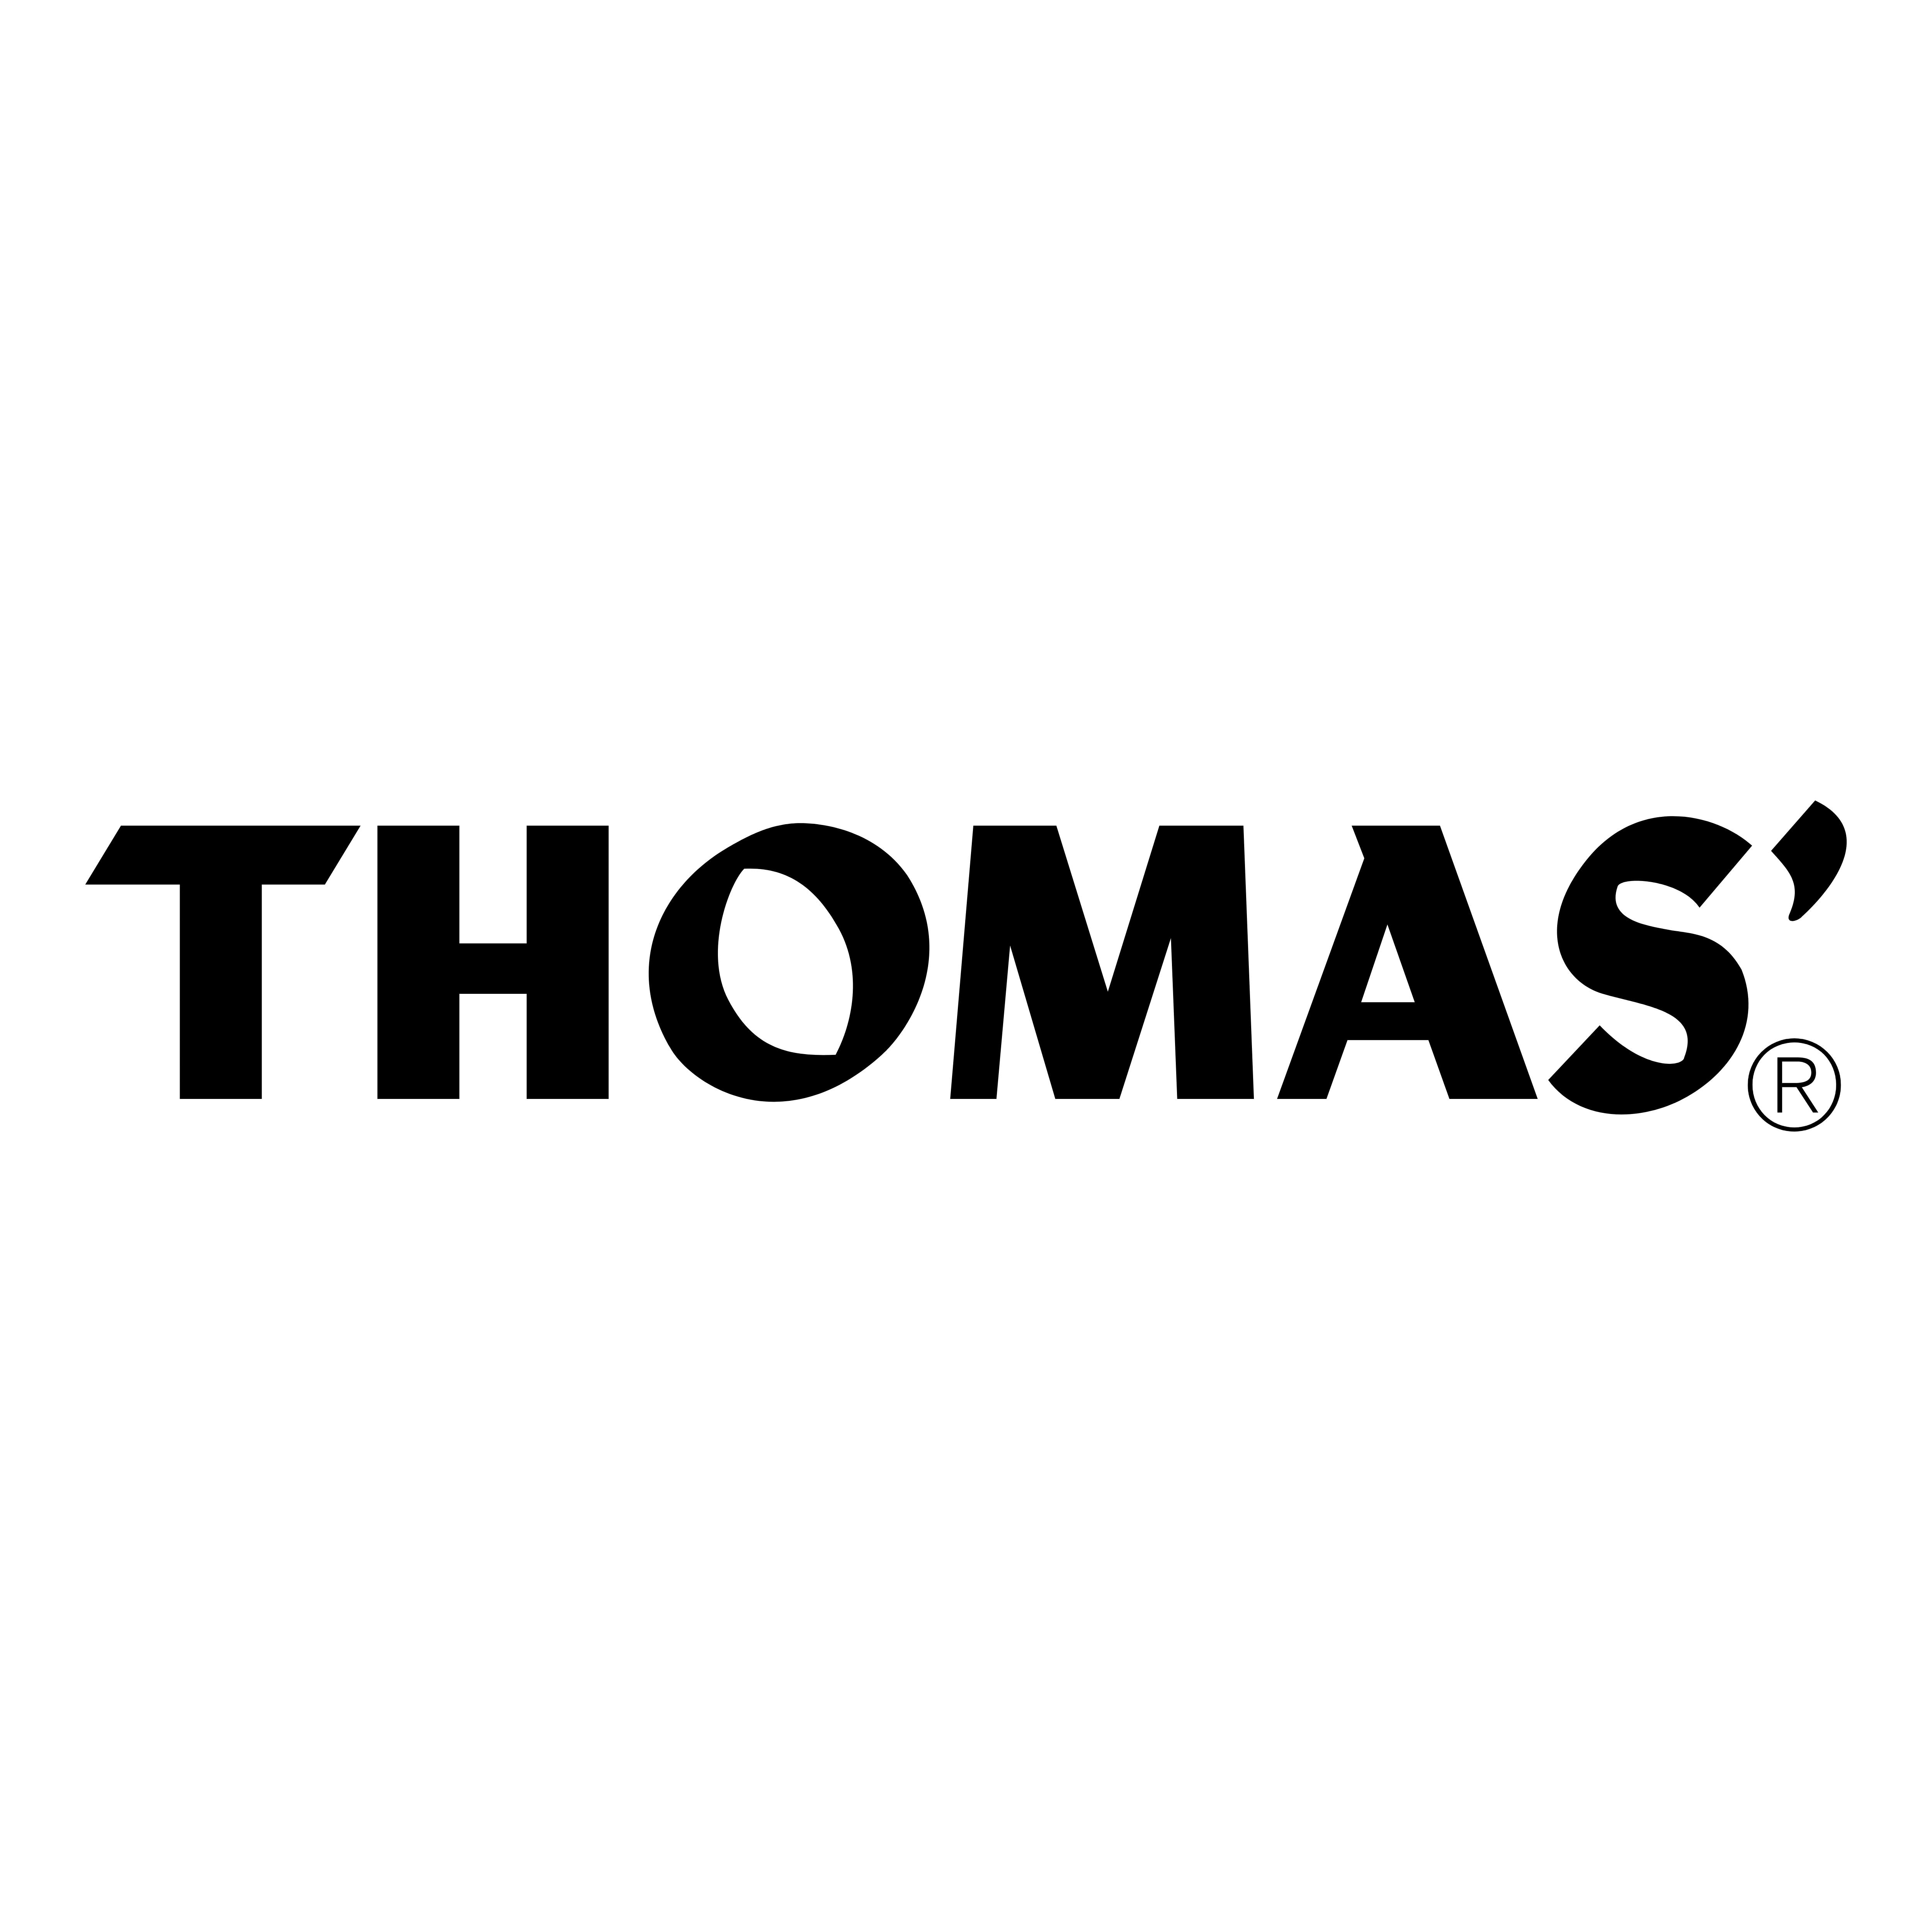 Thomas Logo - Thomas' – Logos Download